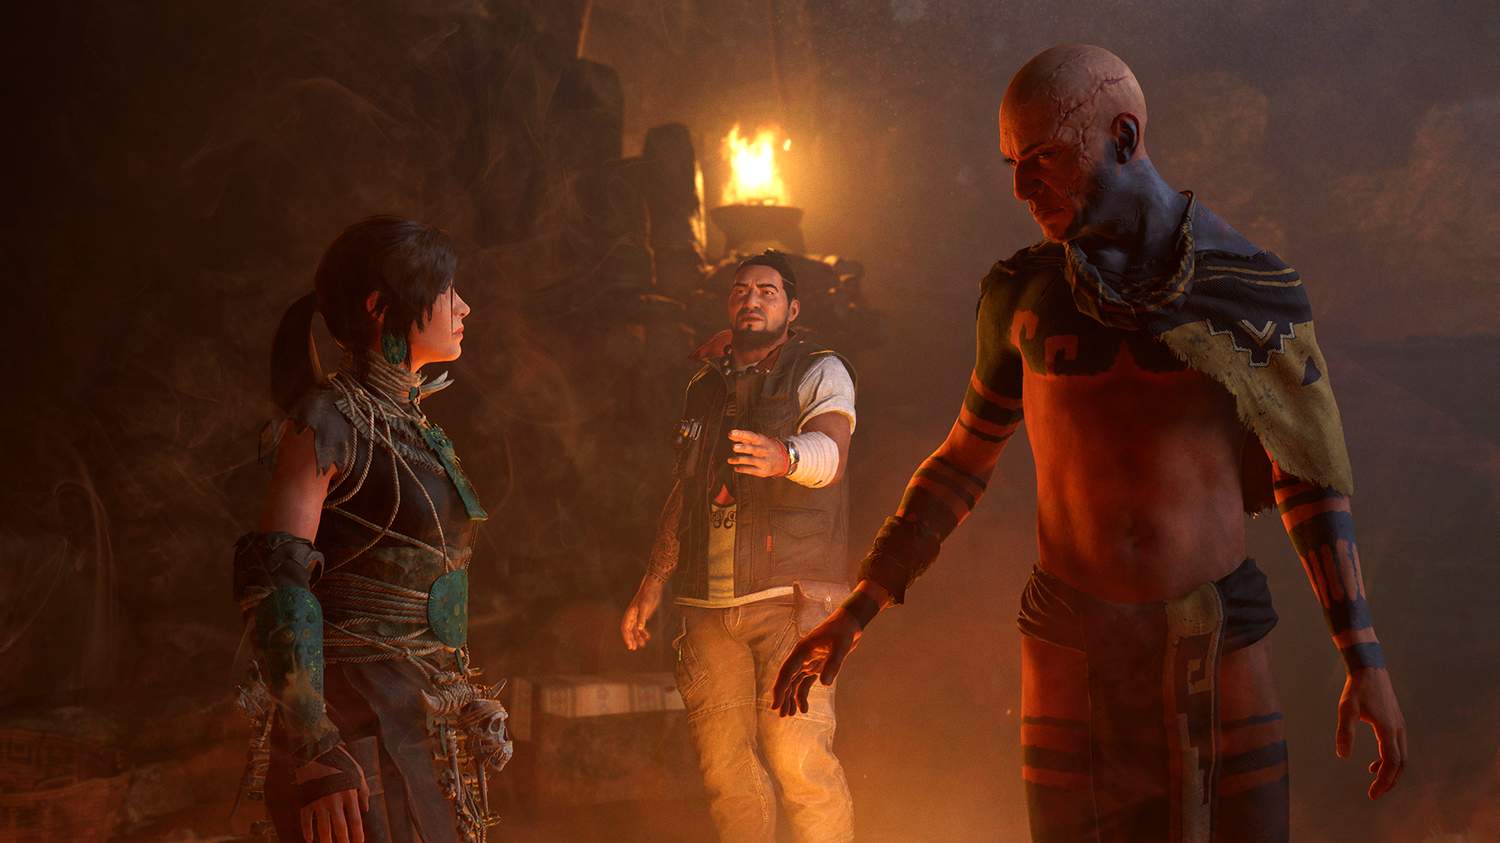 Lara Croft musí v novém přídavku pro Shadow of the Tomb Raider čelit nočním můrám